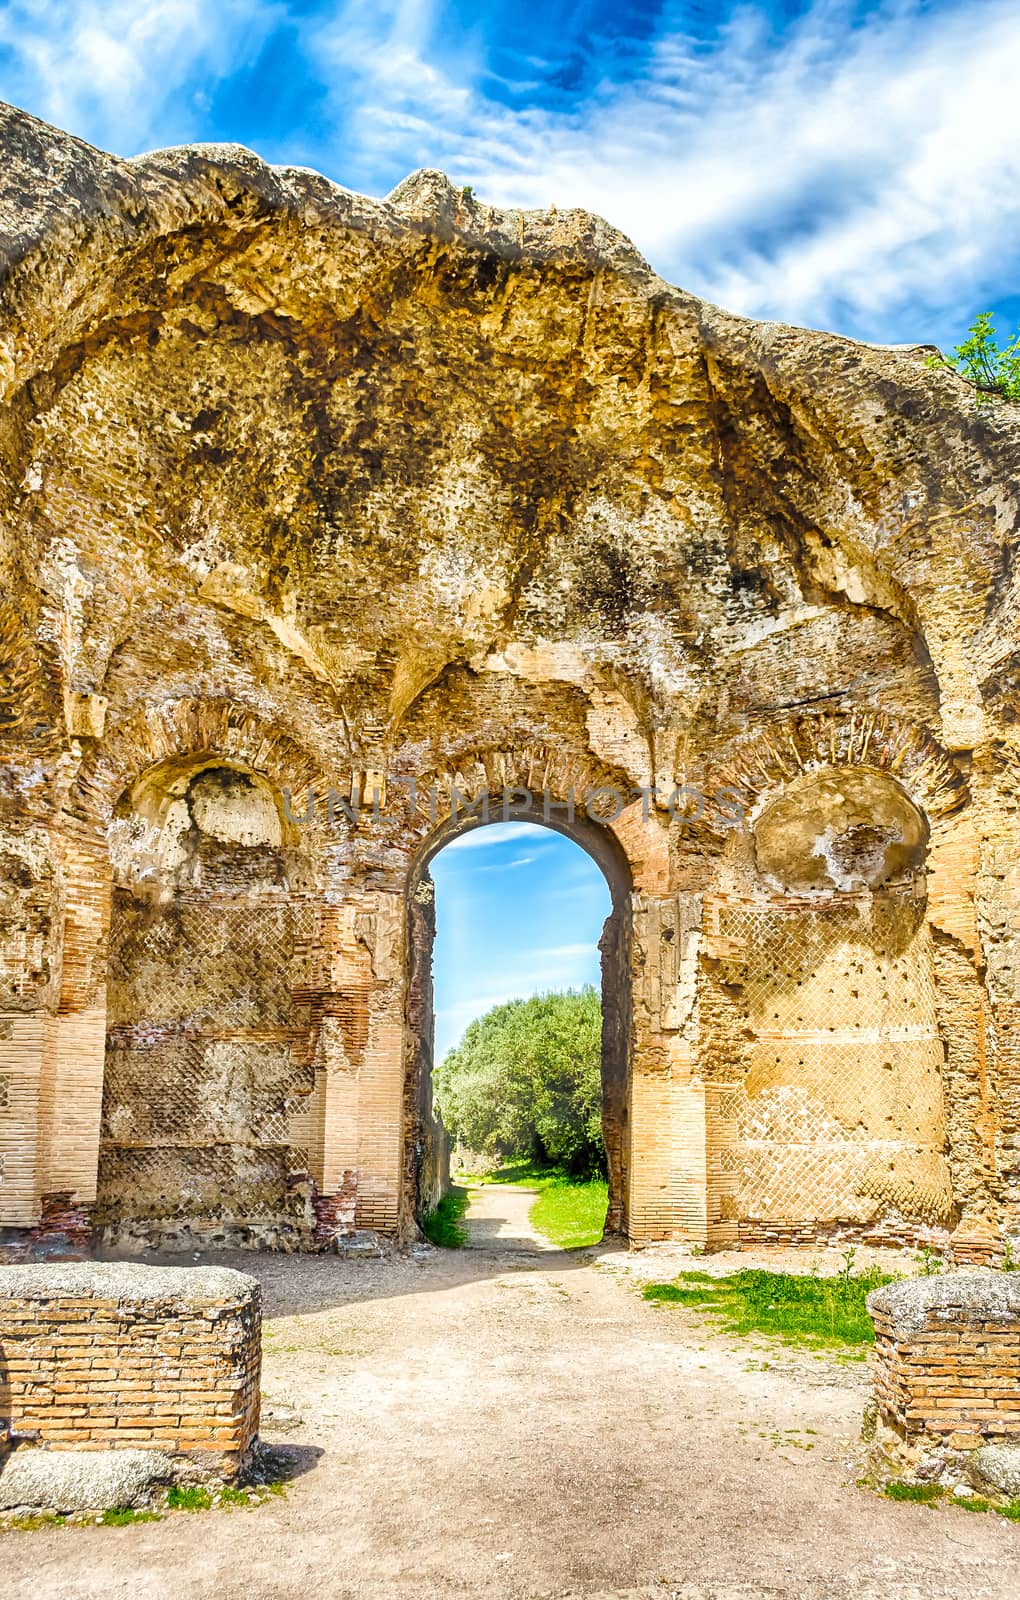 Roman Ruins at VIlla Adriana (Hadrian's Villa), Tivoli, Italy